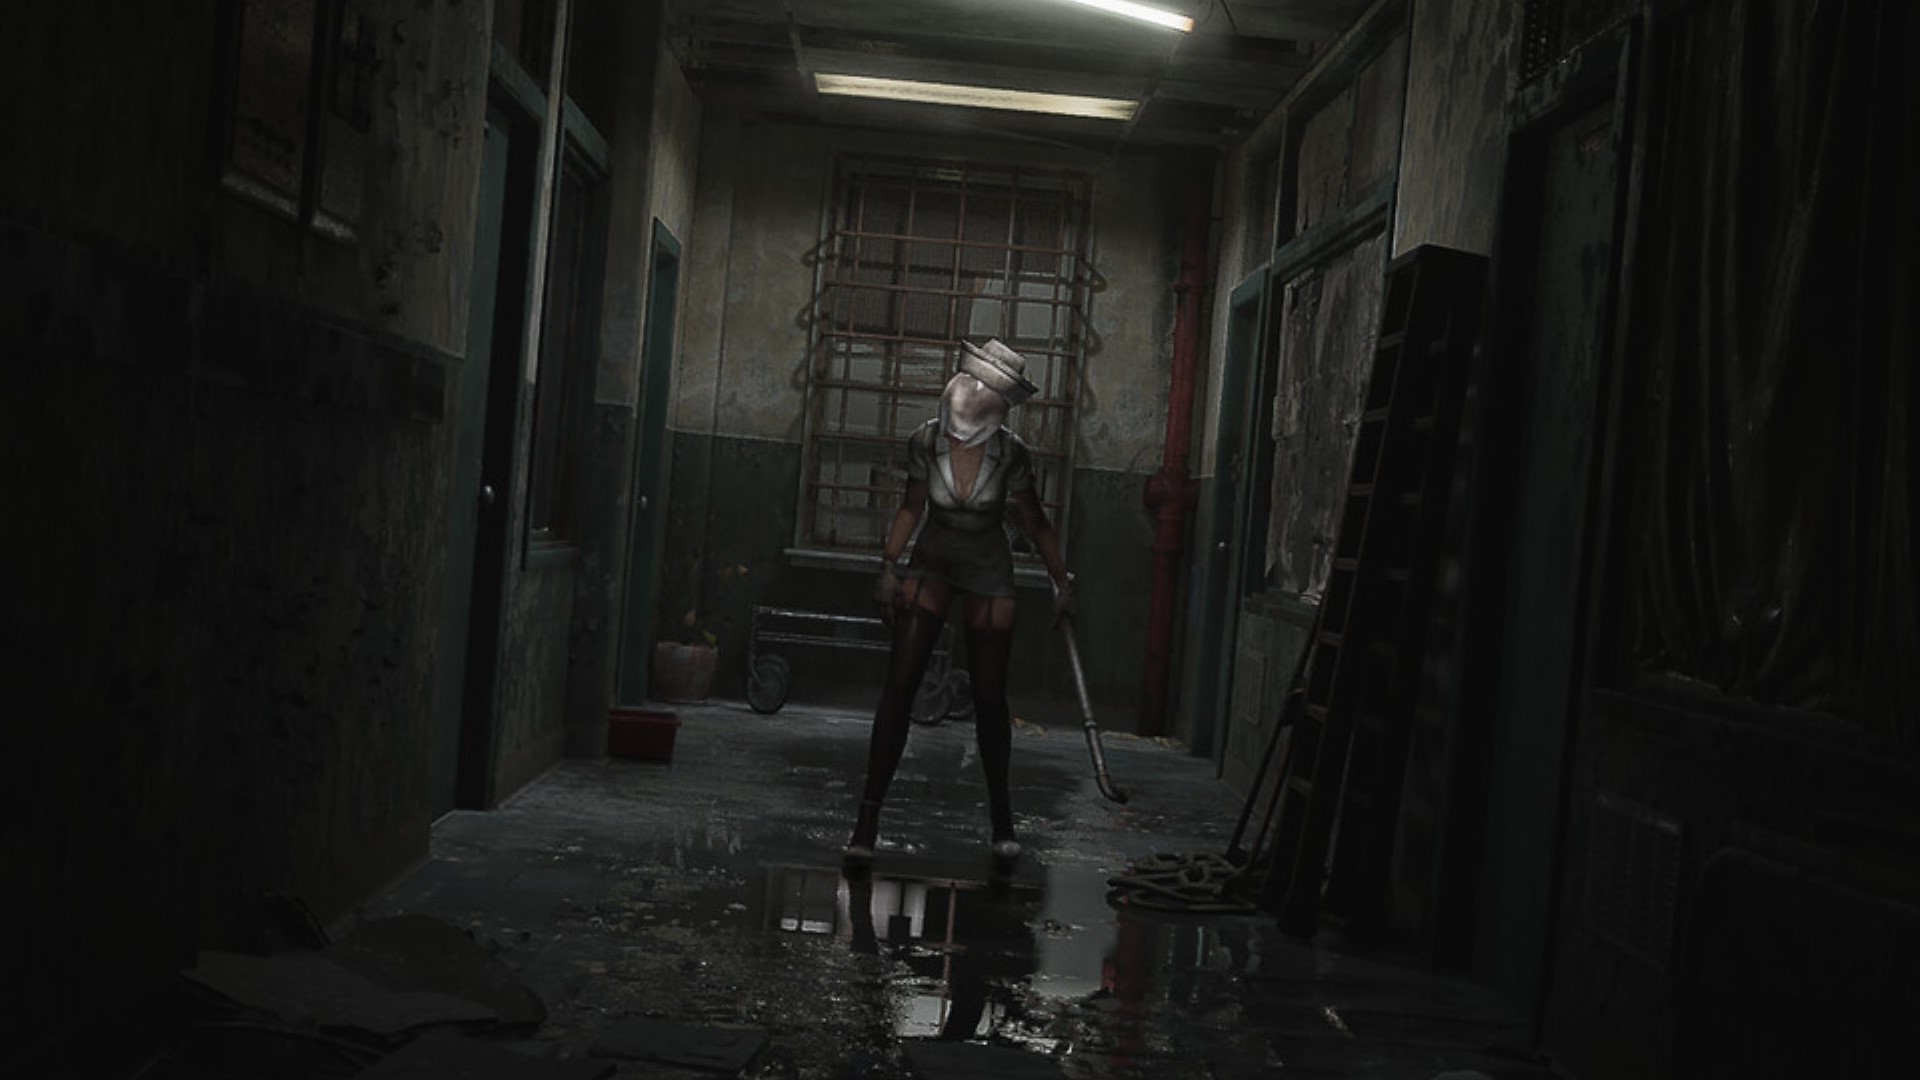 Silent Hill 2 Remake: fecha, cambios, historia, requisitos para PC y más